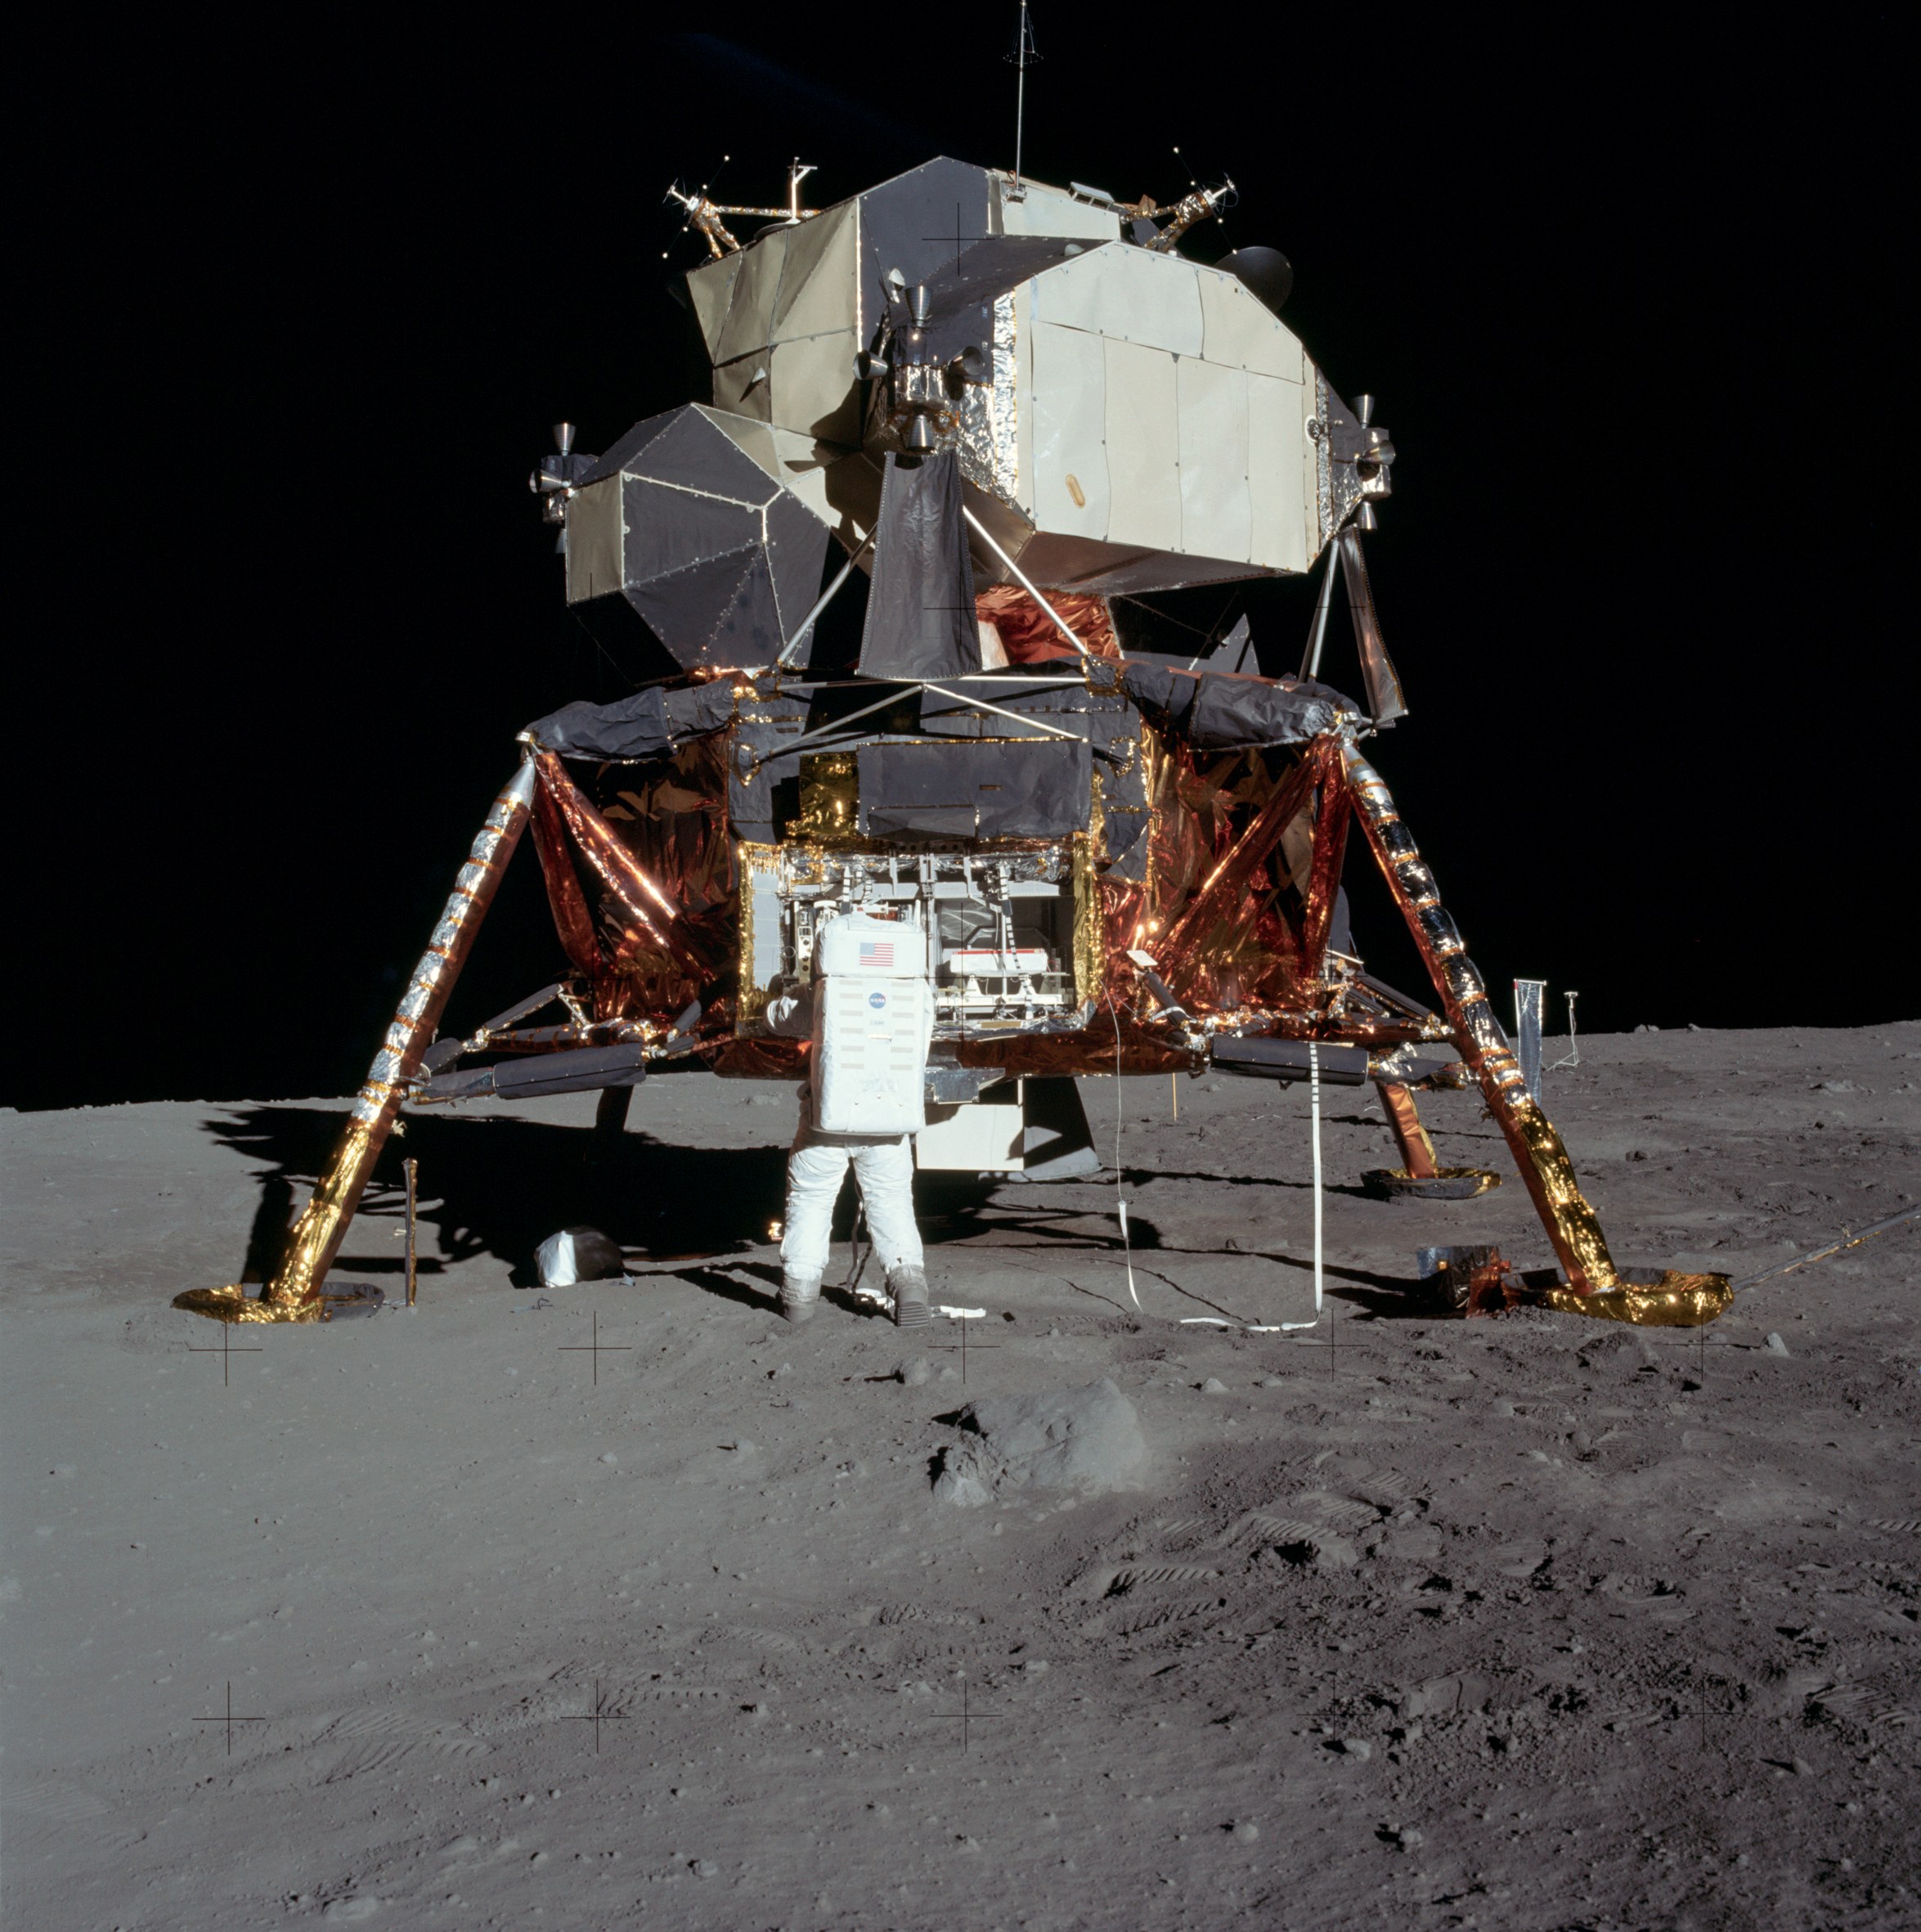  Buzz Aldrin en la superficie lunar. Misión Apolo 11. Foto: Neil Armstrong